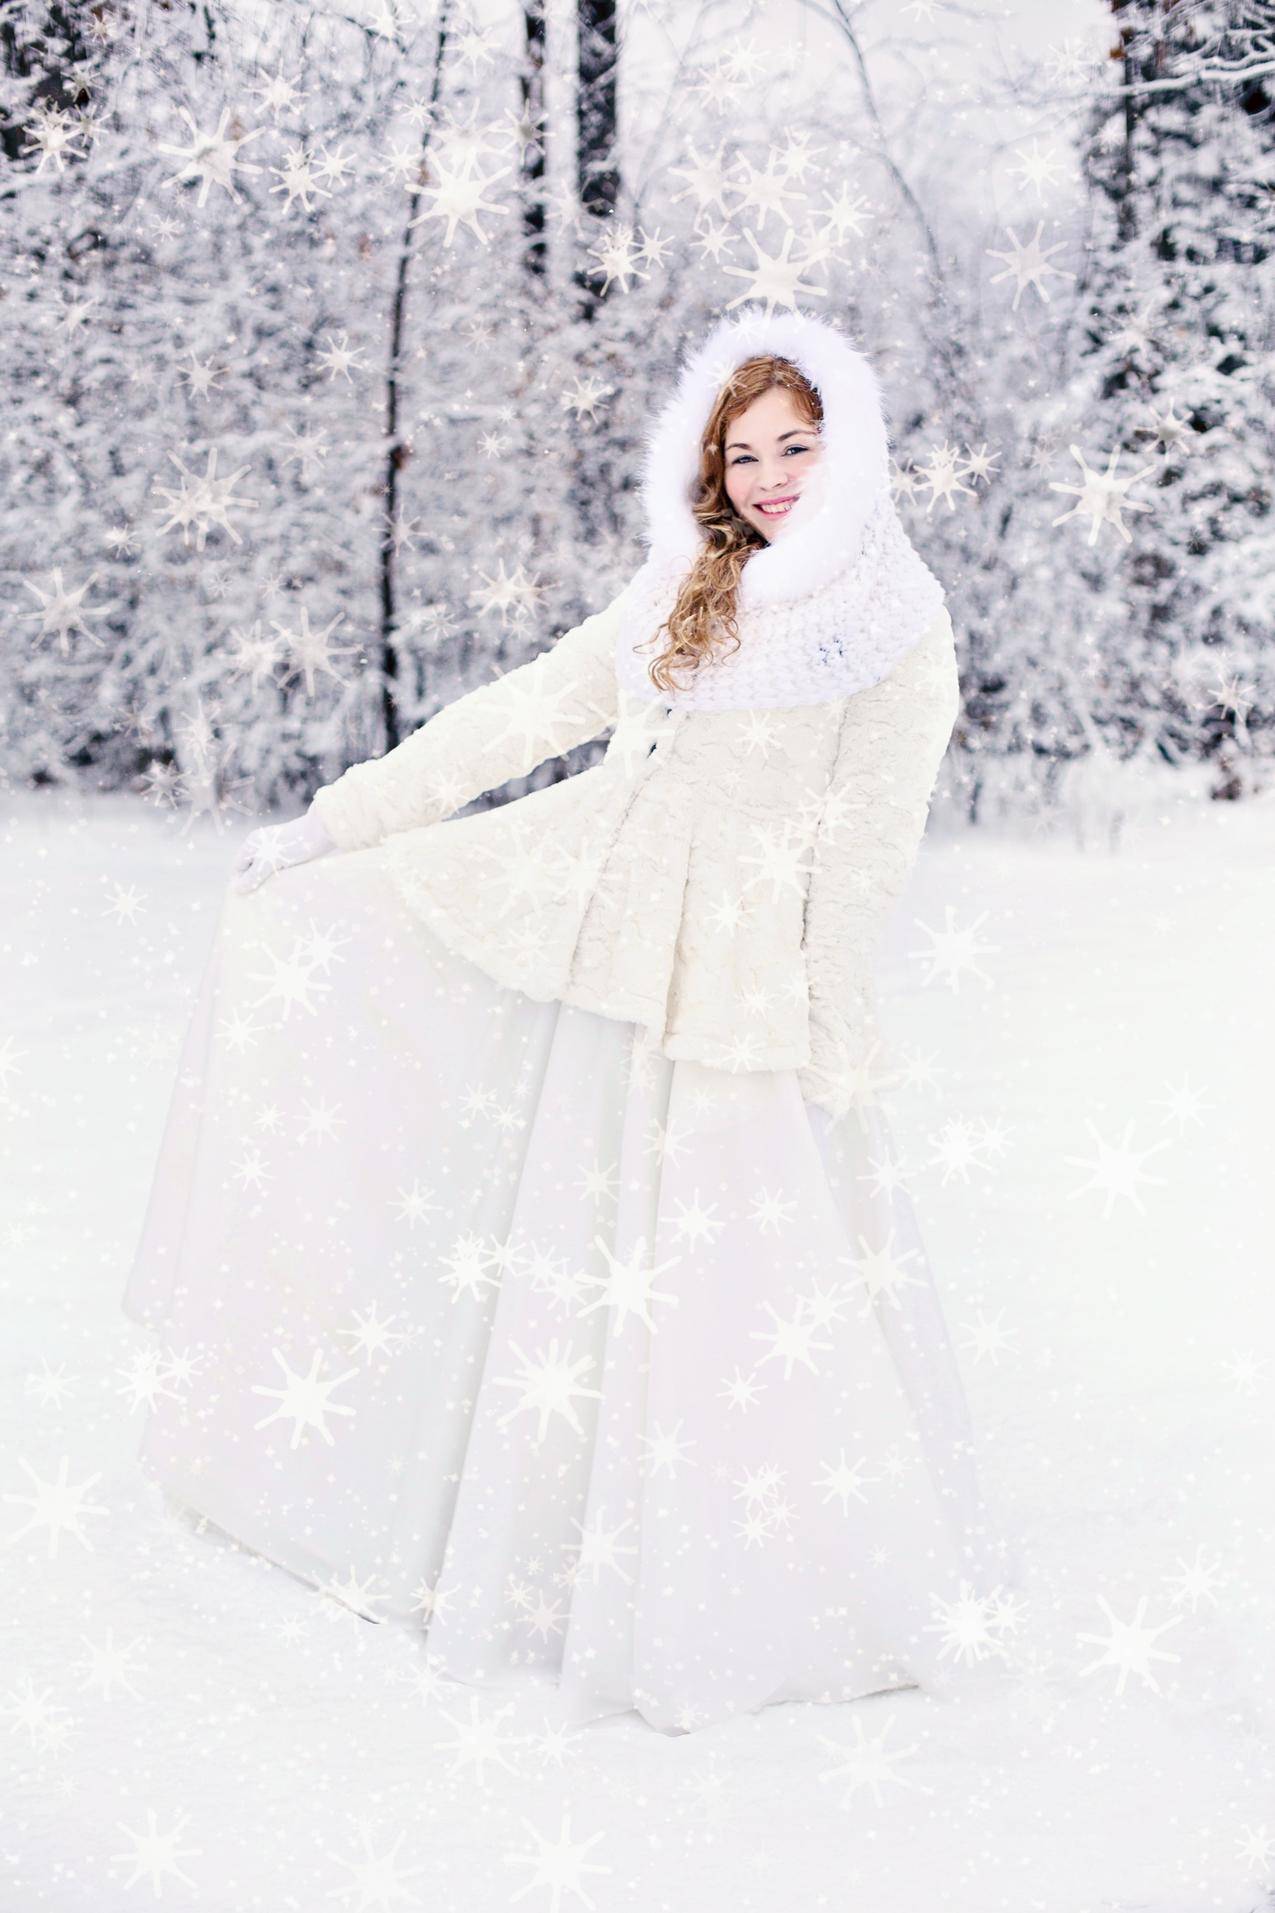 穿着雪白衣服的女人站在积雪覆盖的树后面的雪地上